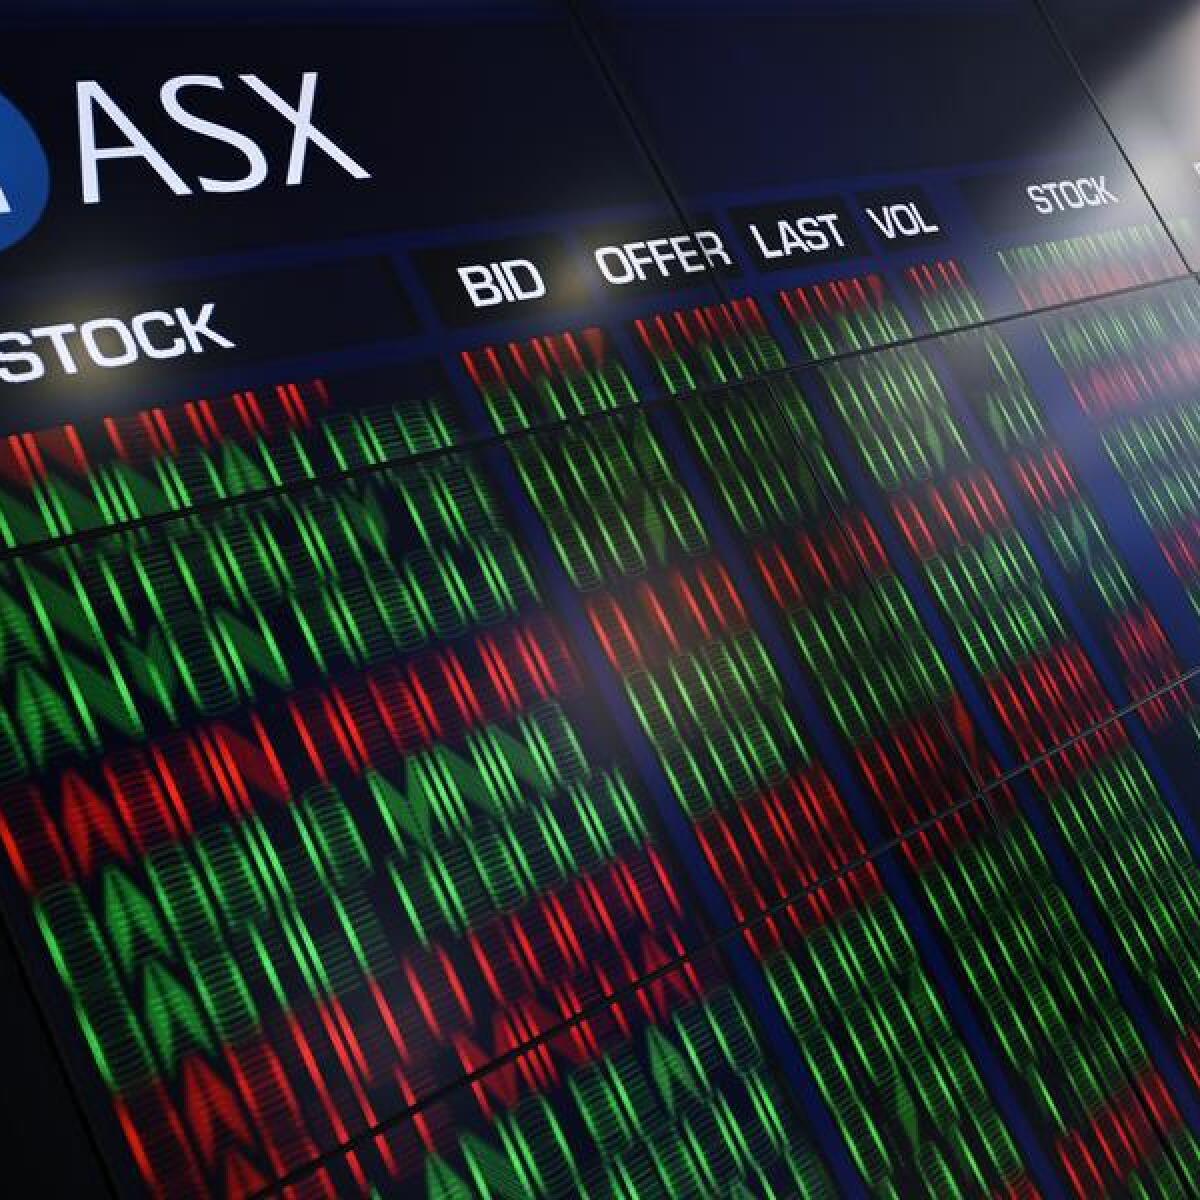 The Australian Securities Exchange in Sydney